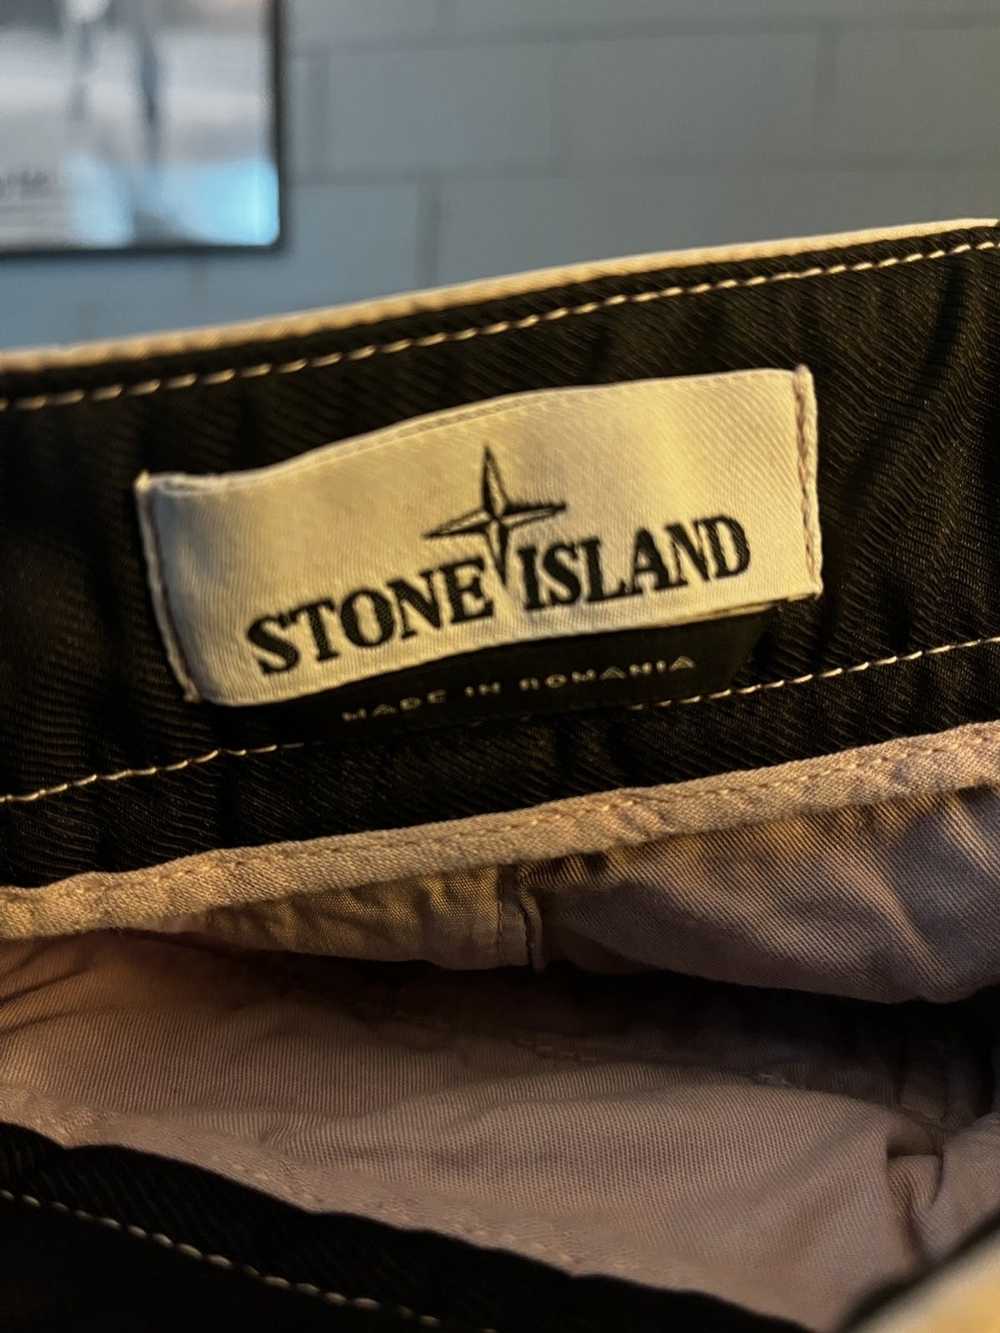 Stone Island Stone Island Shorts - image 3